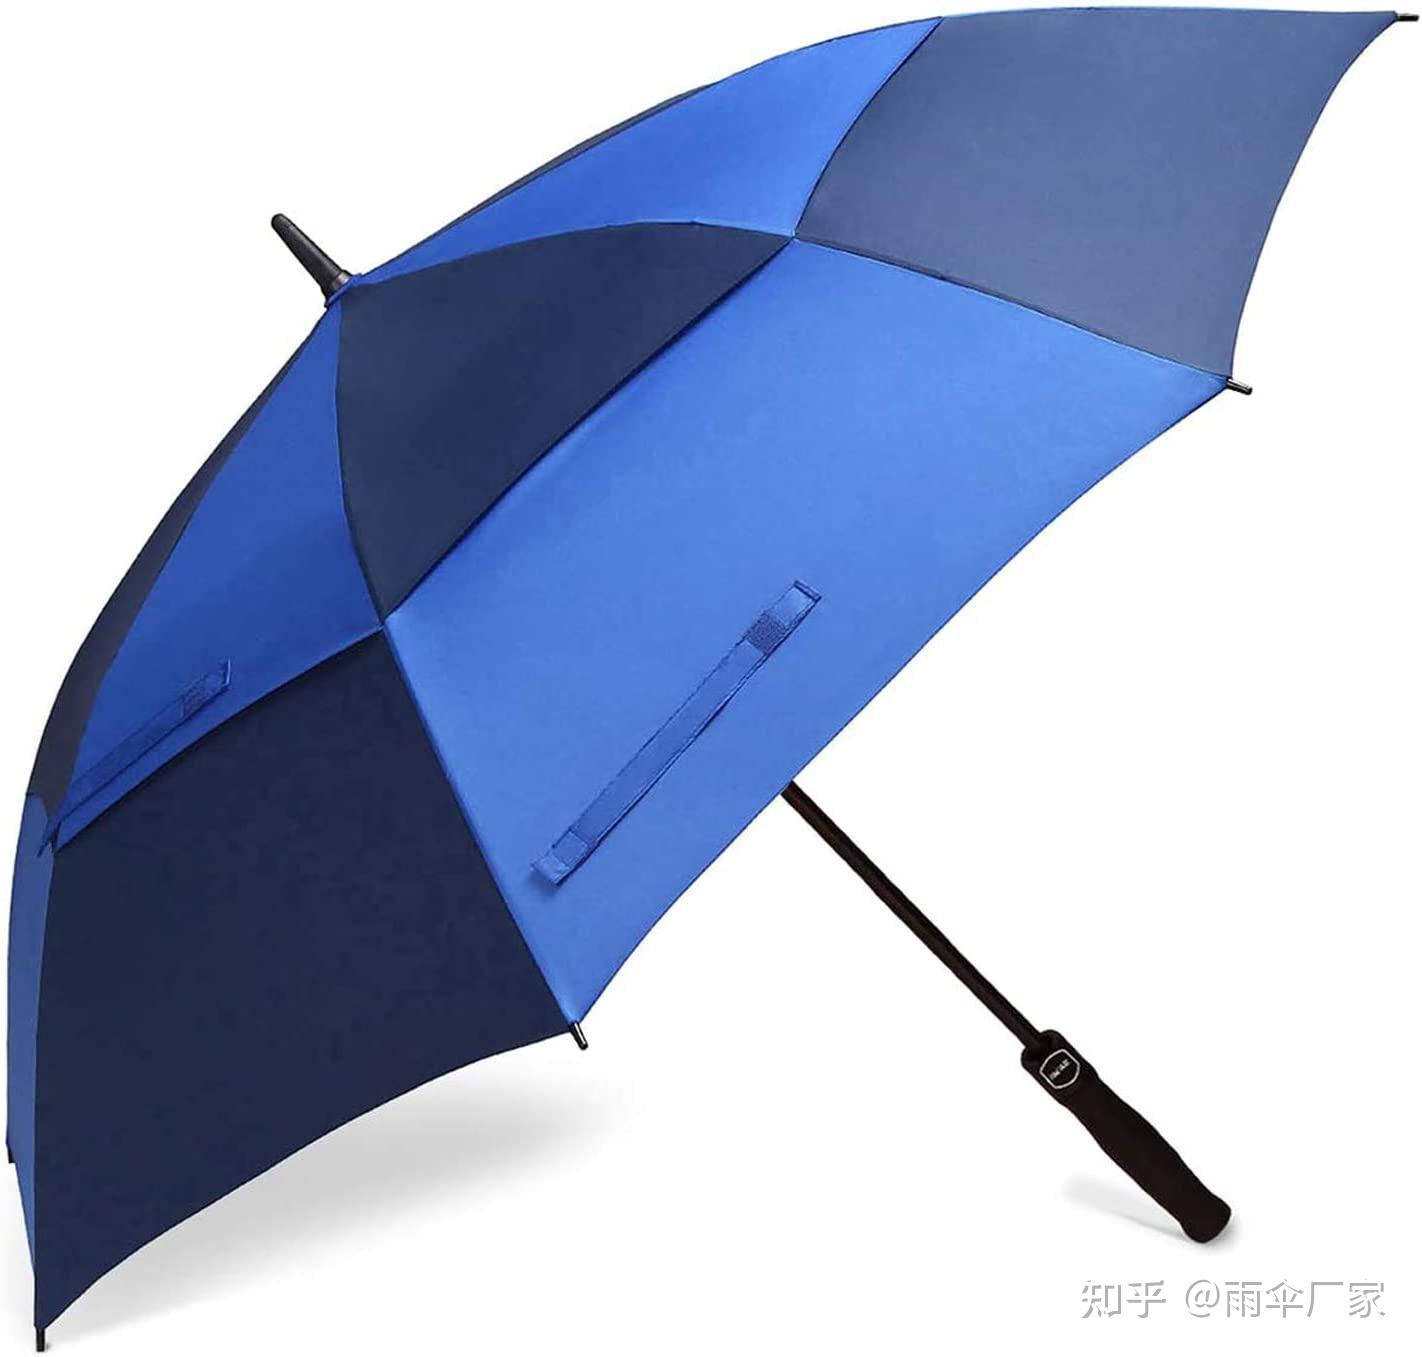 2023年遮阳伞/太阳伞哪个牌子好？性价比遮阳伞/晴雨伞推荐（蕉下、sunskip、WPC、kobold、coolibar、knirps） - 知乎